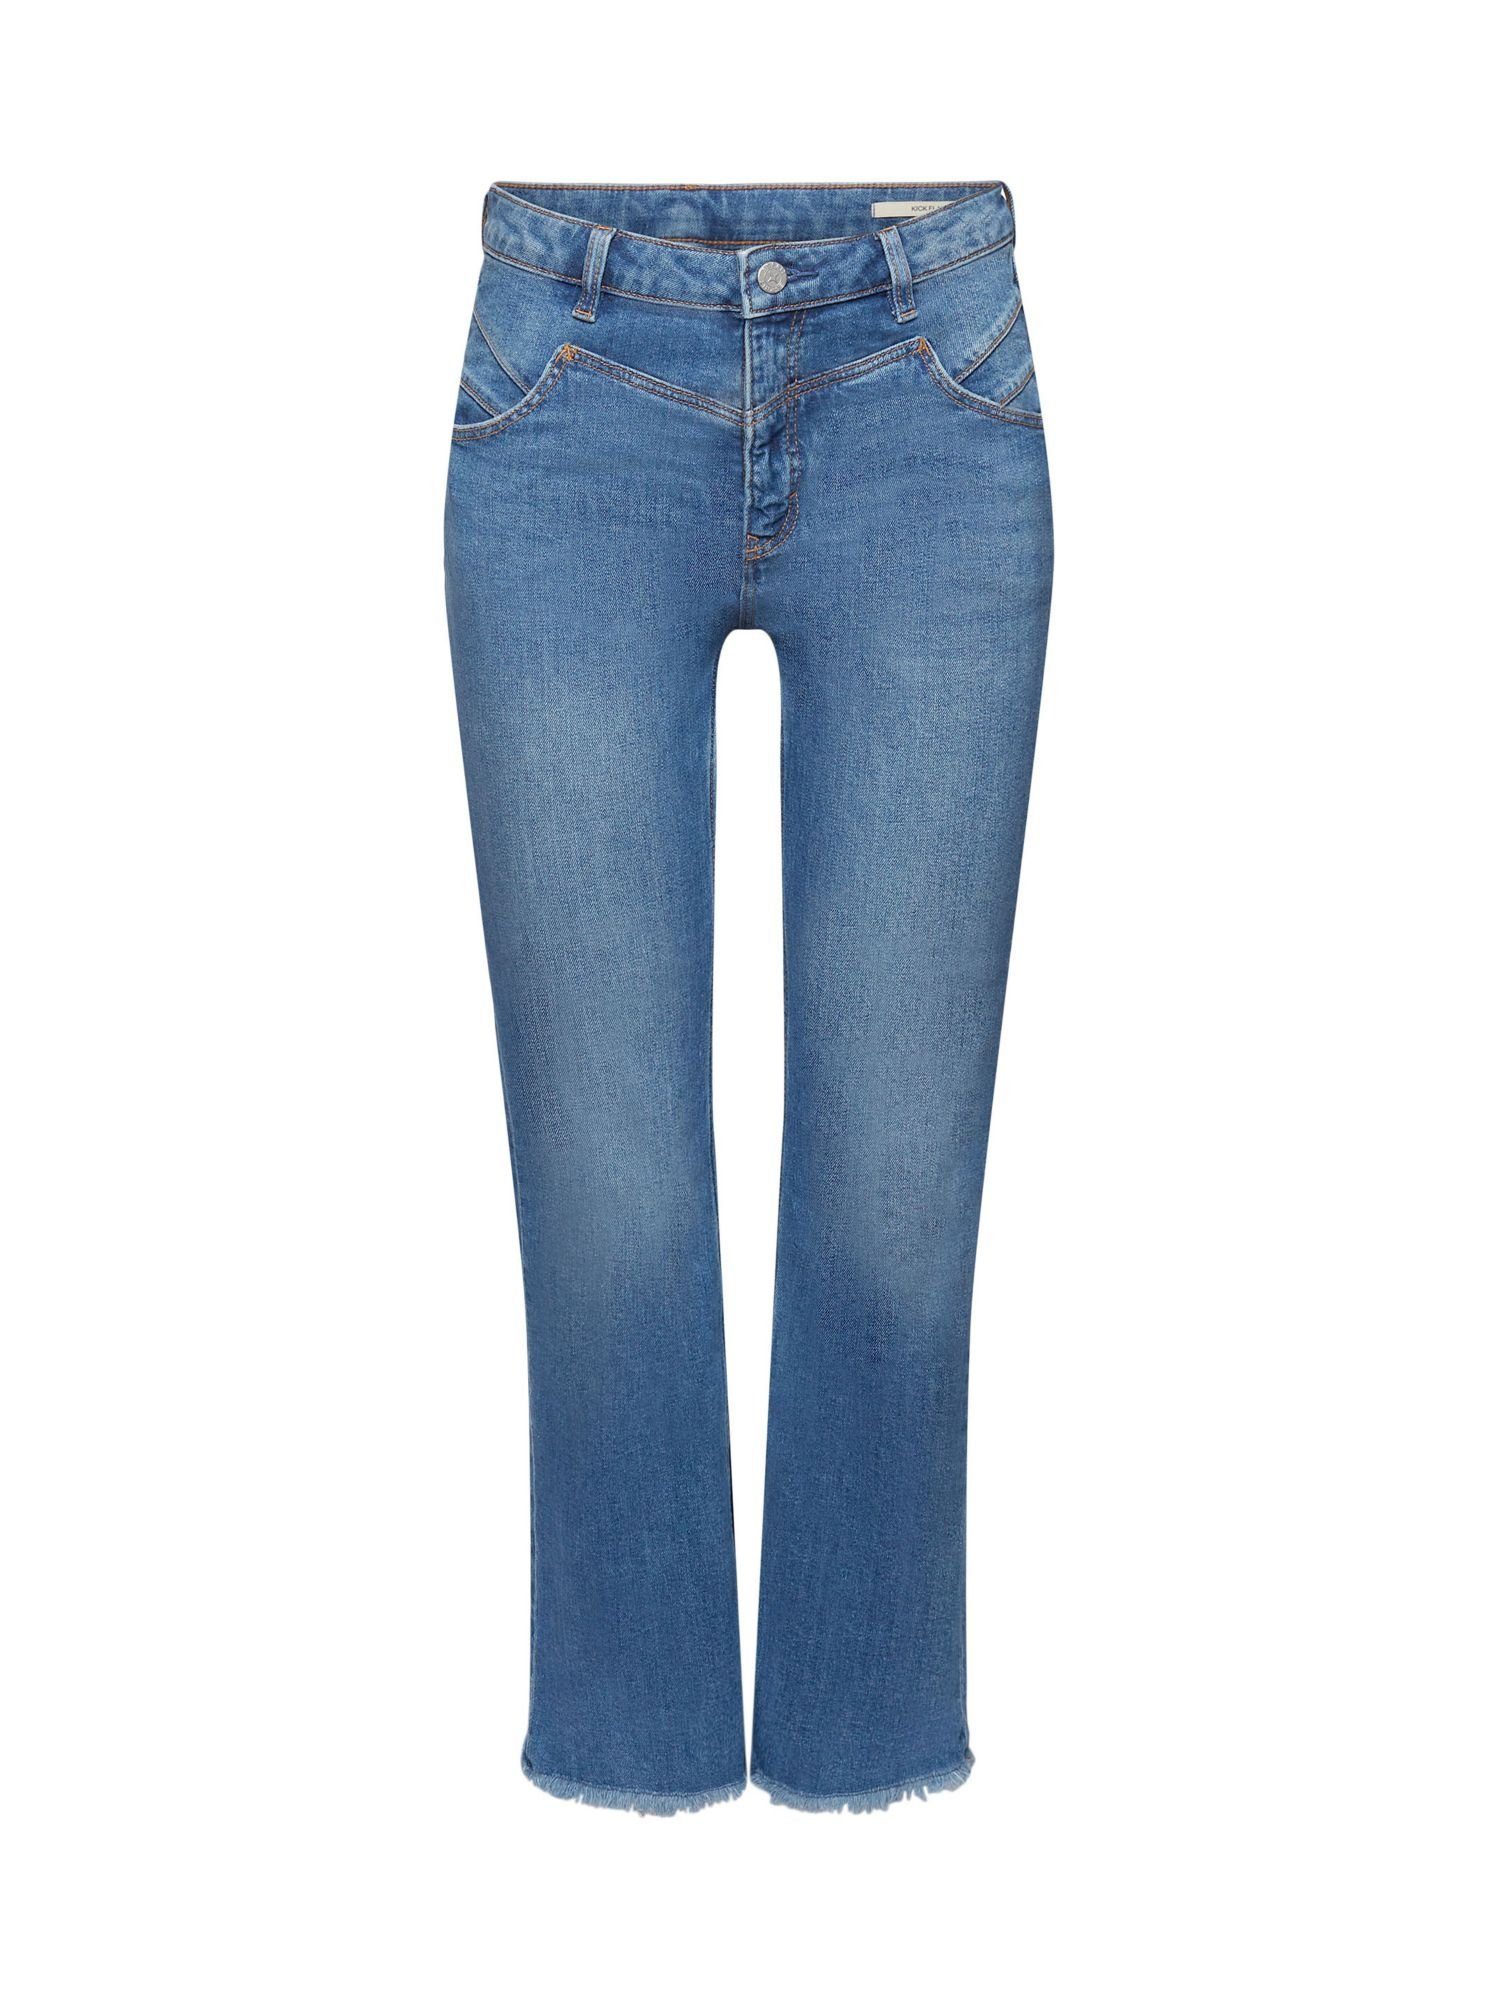 Esprit 7/8-Jeans Ausgestellte Baumwolljeans mit mittlerer Bundhöhe BLUE MEDIUM WASHED